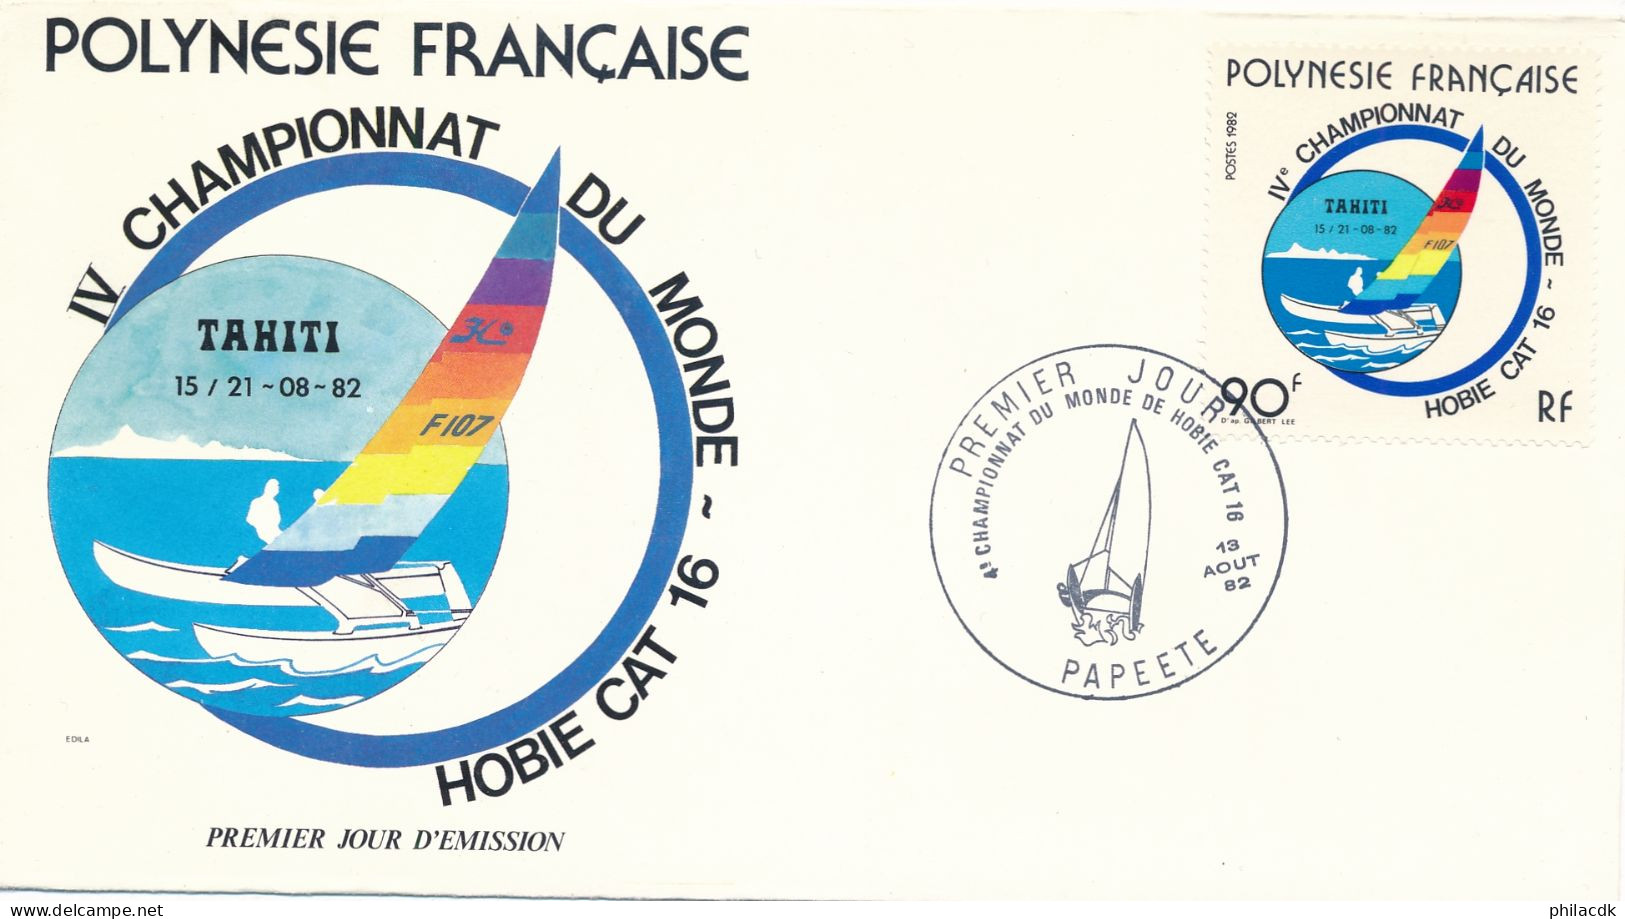 POLYNESIE FRANCAISE - ENVELOPPE PREMIER JOUR  DU 13 AOUT 1982 4EME CHAMPIONNAT DU MONDE DE HOBBIE CAT 16 - Voile